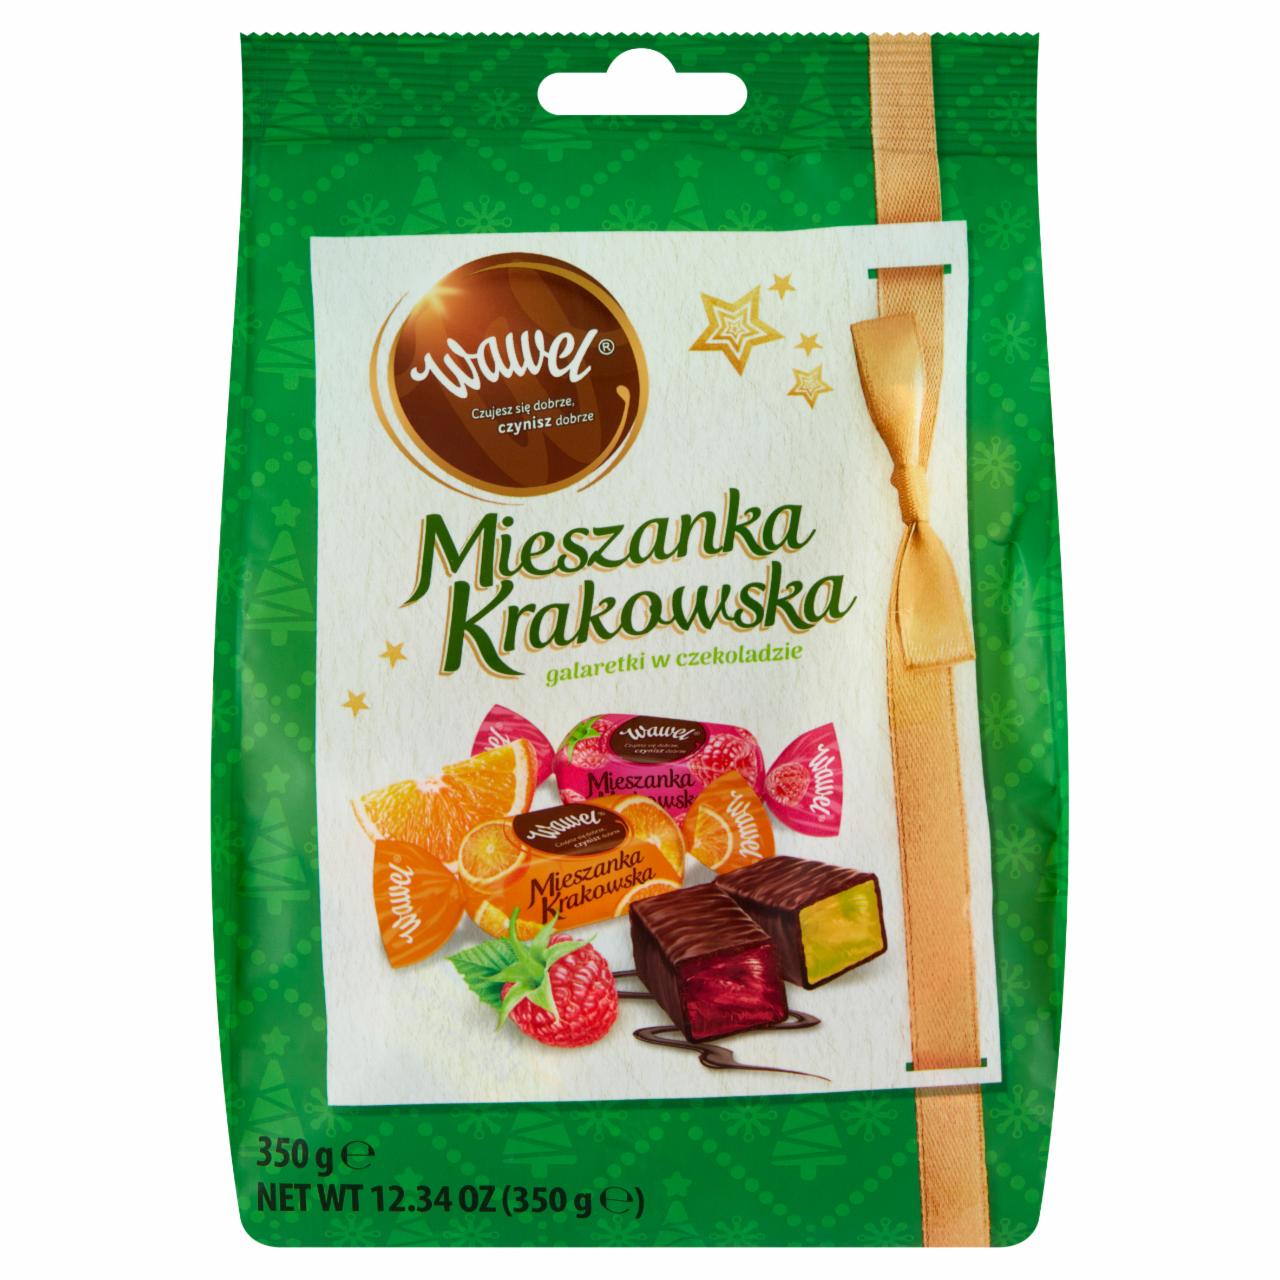 Zdjęcia - Wawel Mieszanka Krakowska Galaretki w czekoladzie 350 g